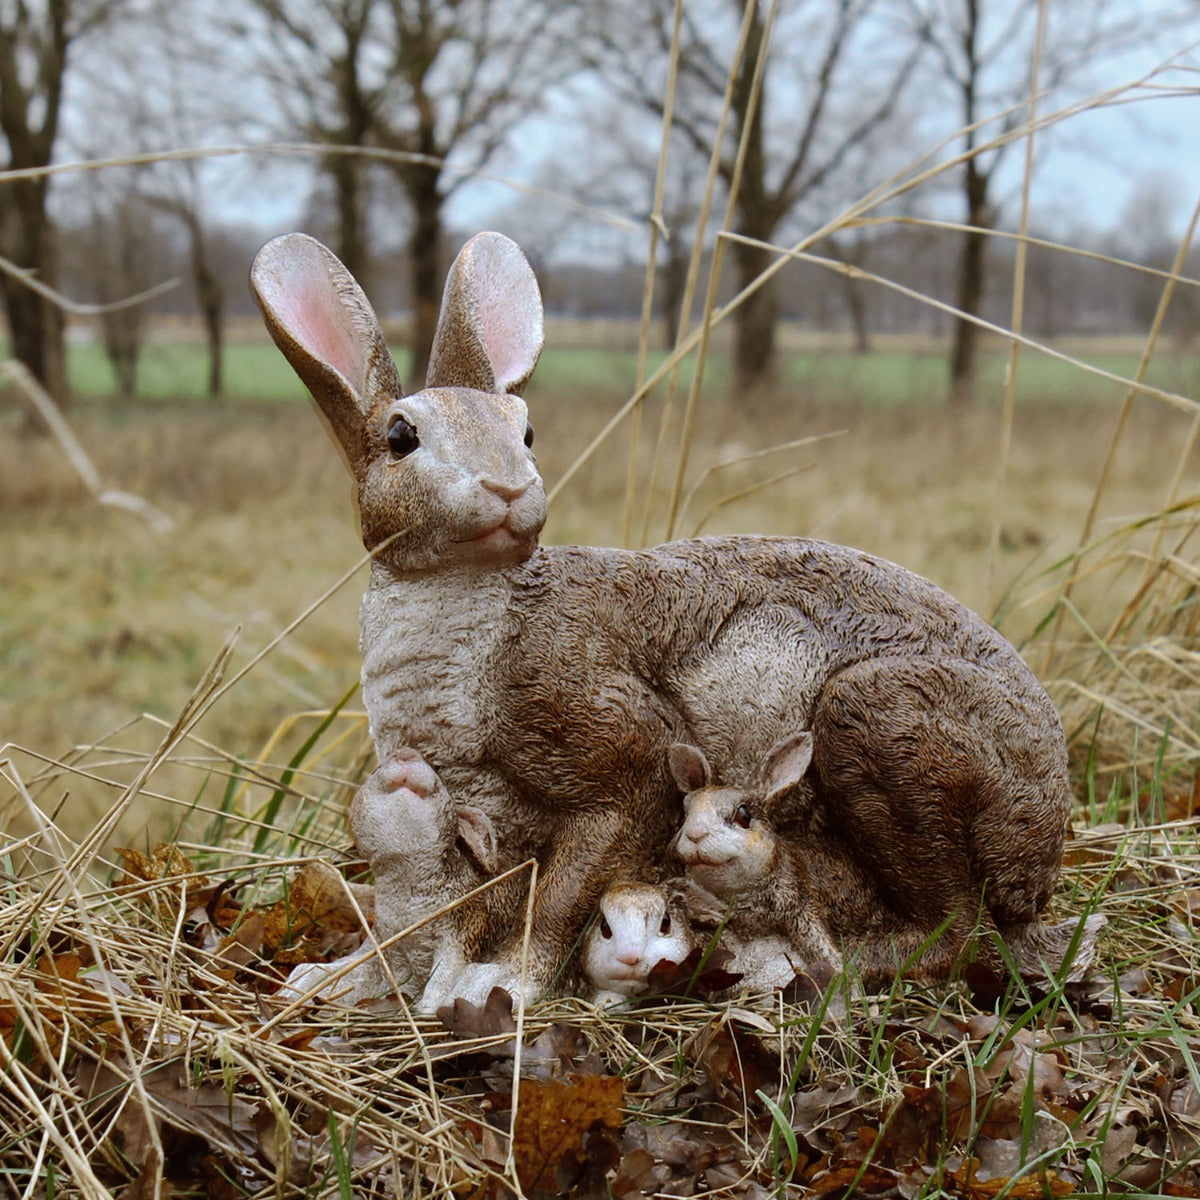 Dekofigur Hase Häsin Claudia mit Jungen Kaninchen Figur lebensecht Osterhasen Deko Gartenfigur Hase